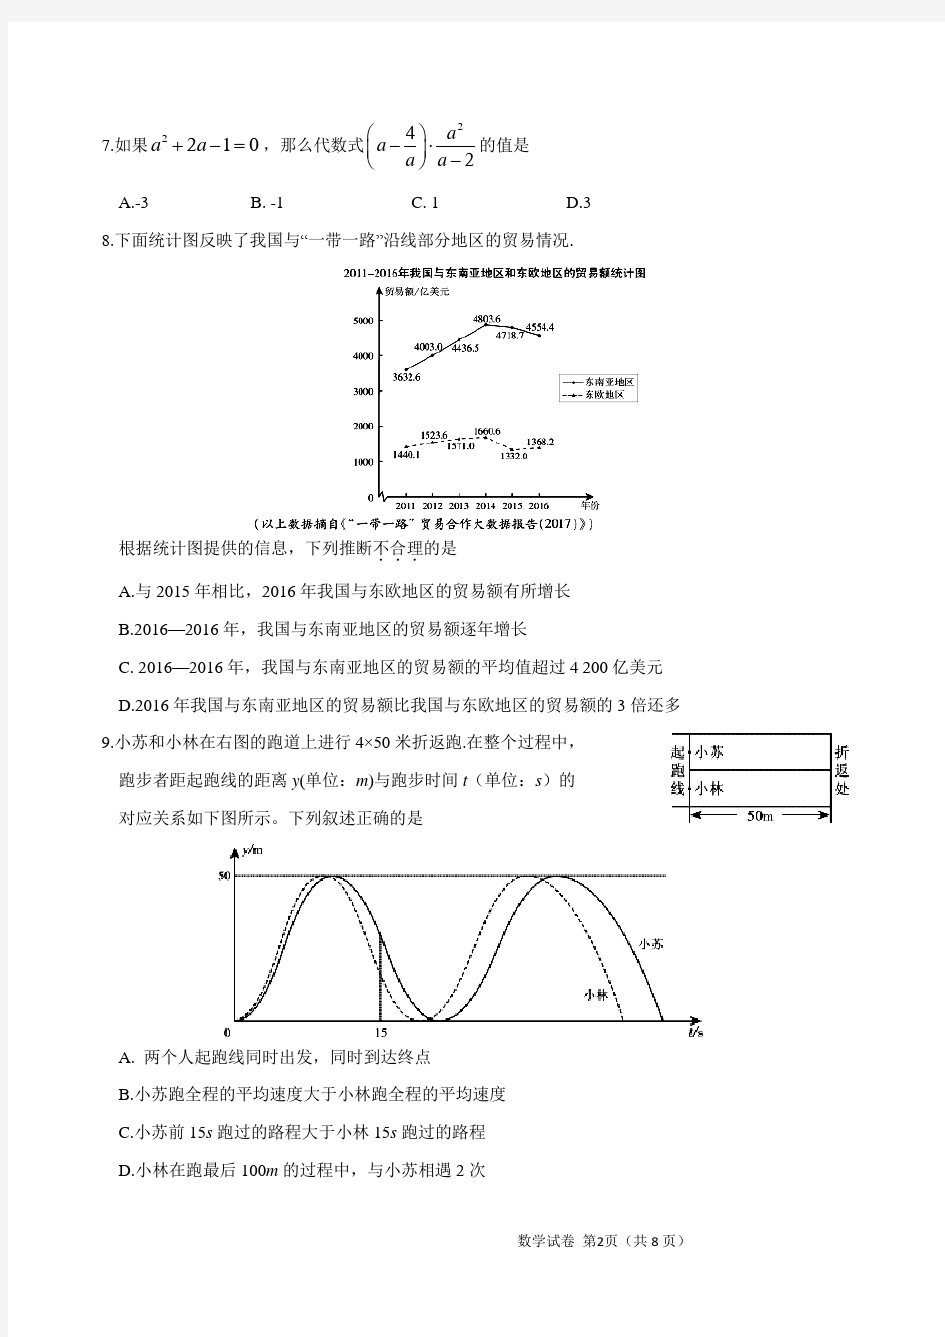 2017年北京中考数学试卷及标准答案